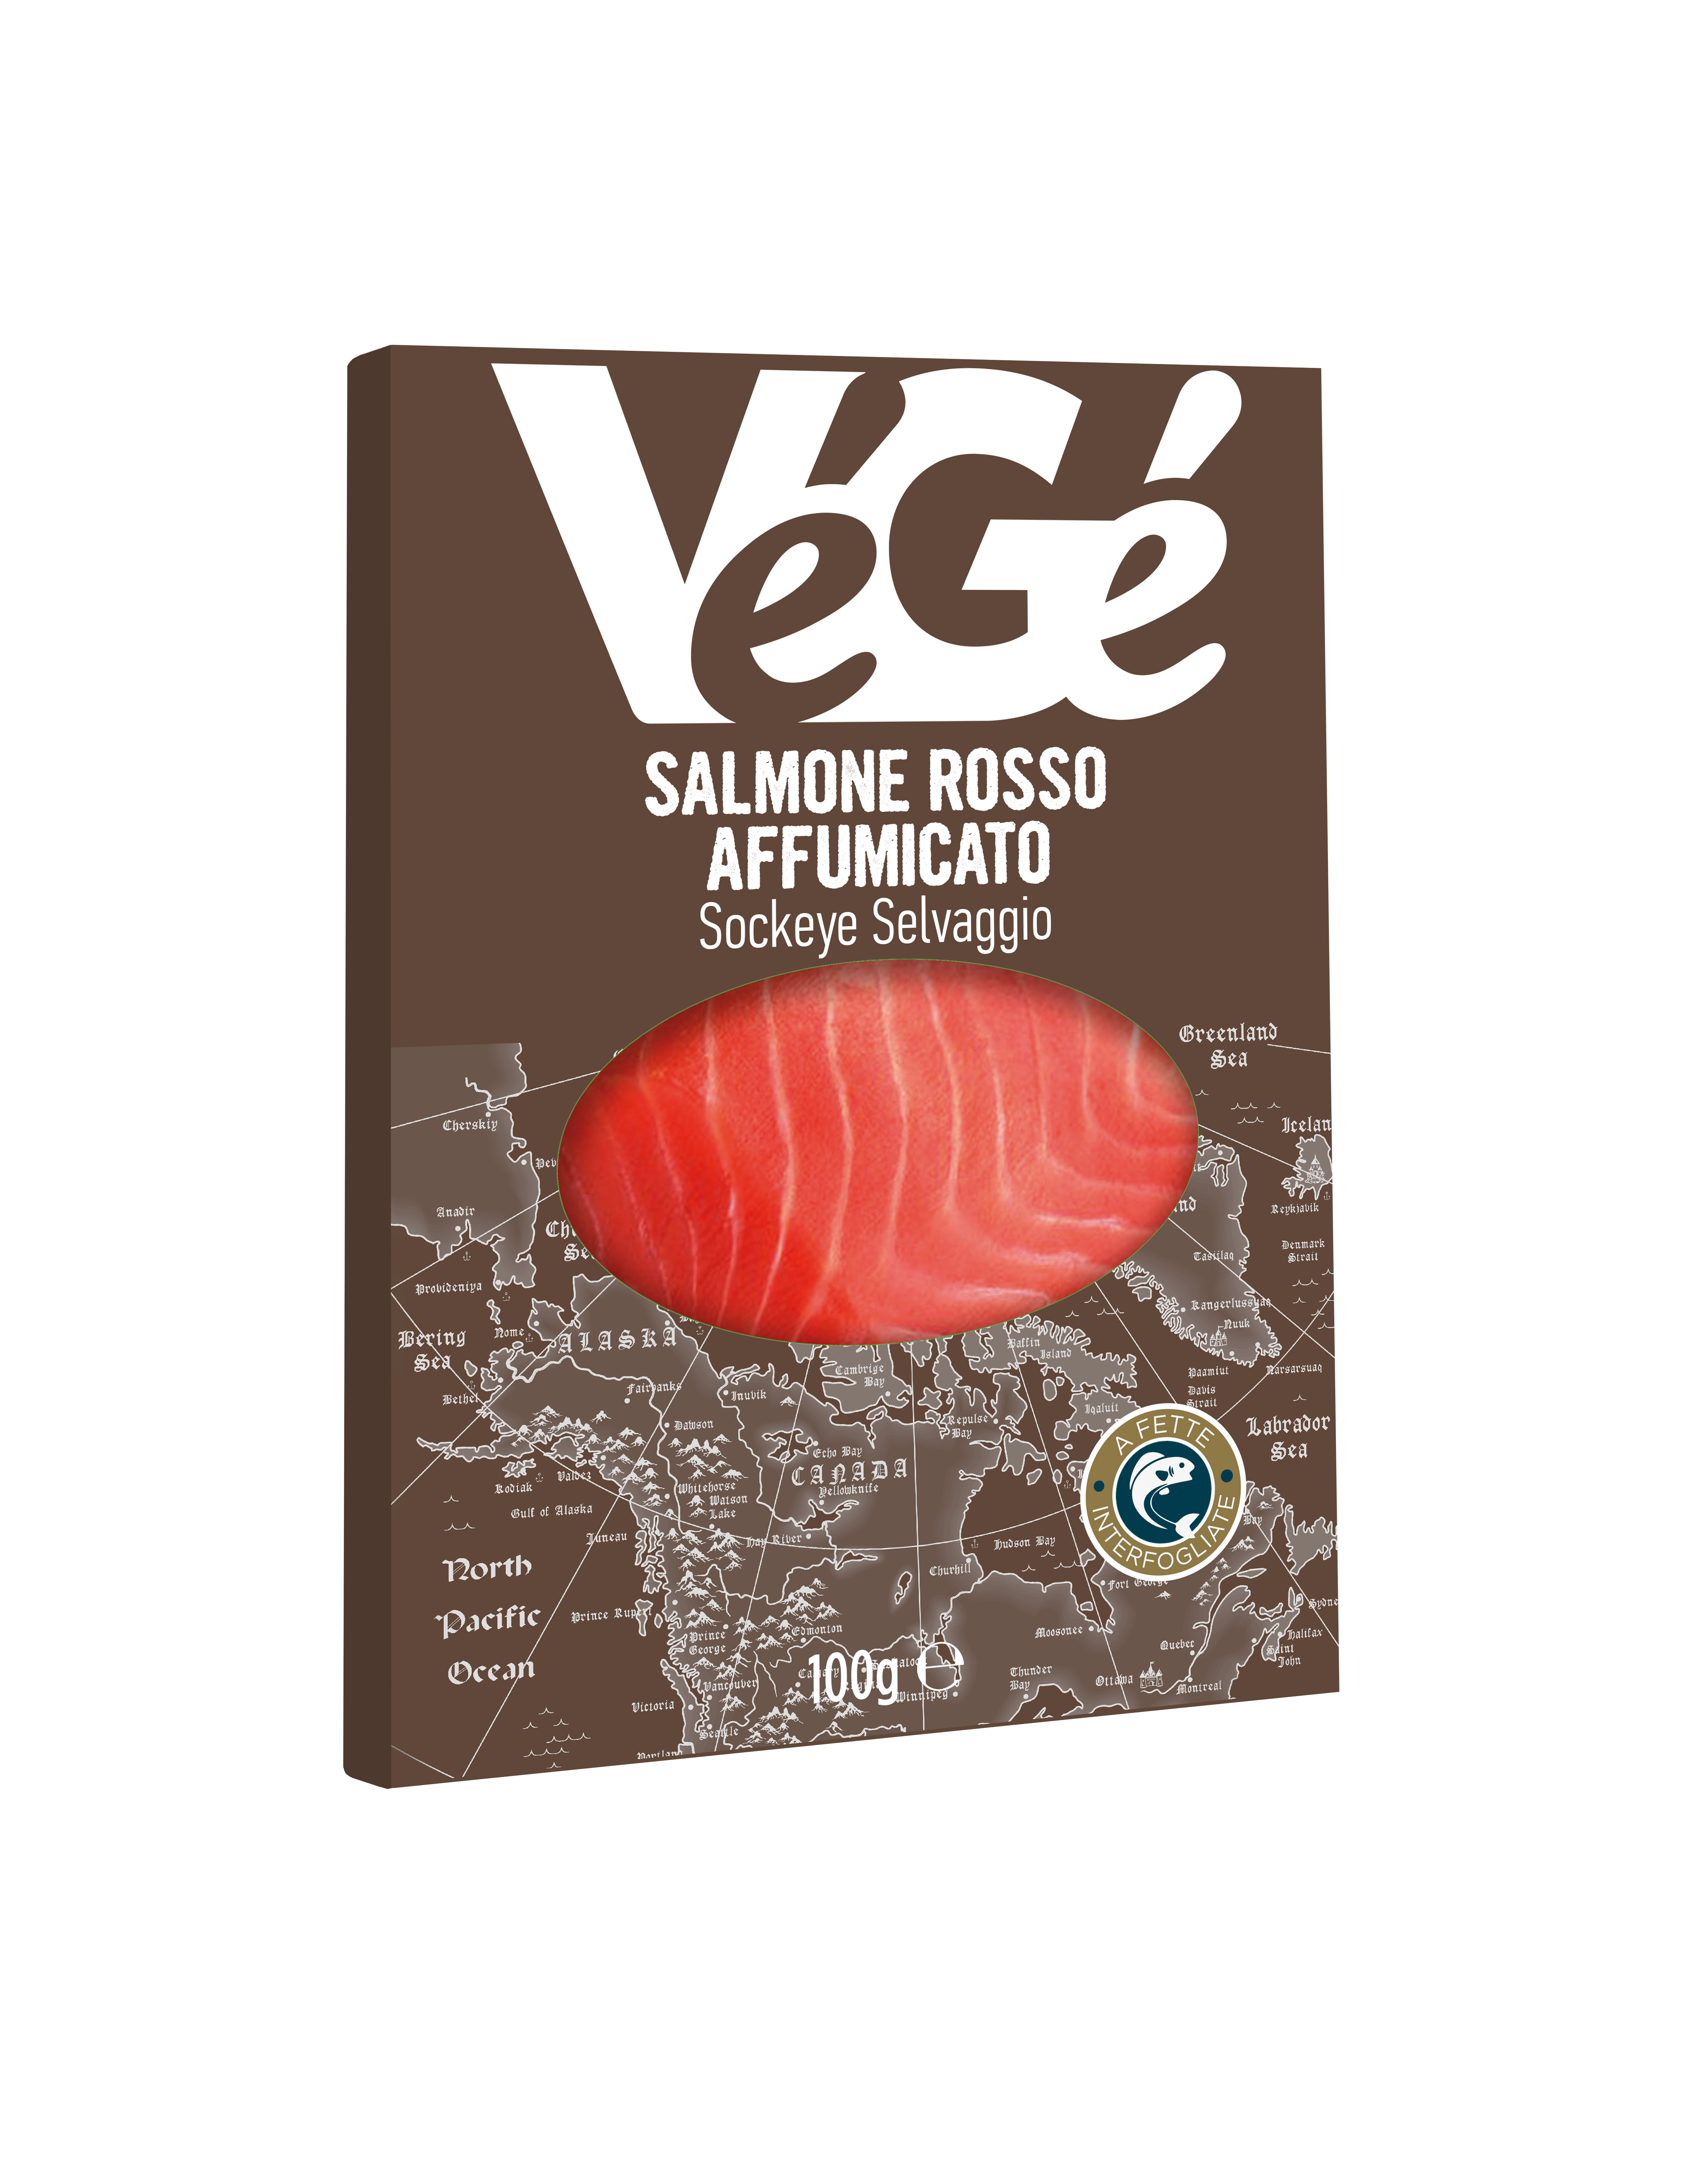 Salmone rosso affumicato Vegé GDO (Grande Distribuzione Organizzata)